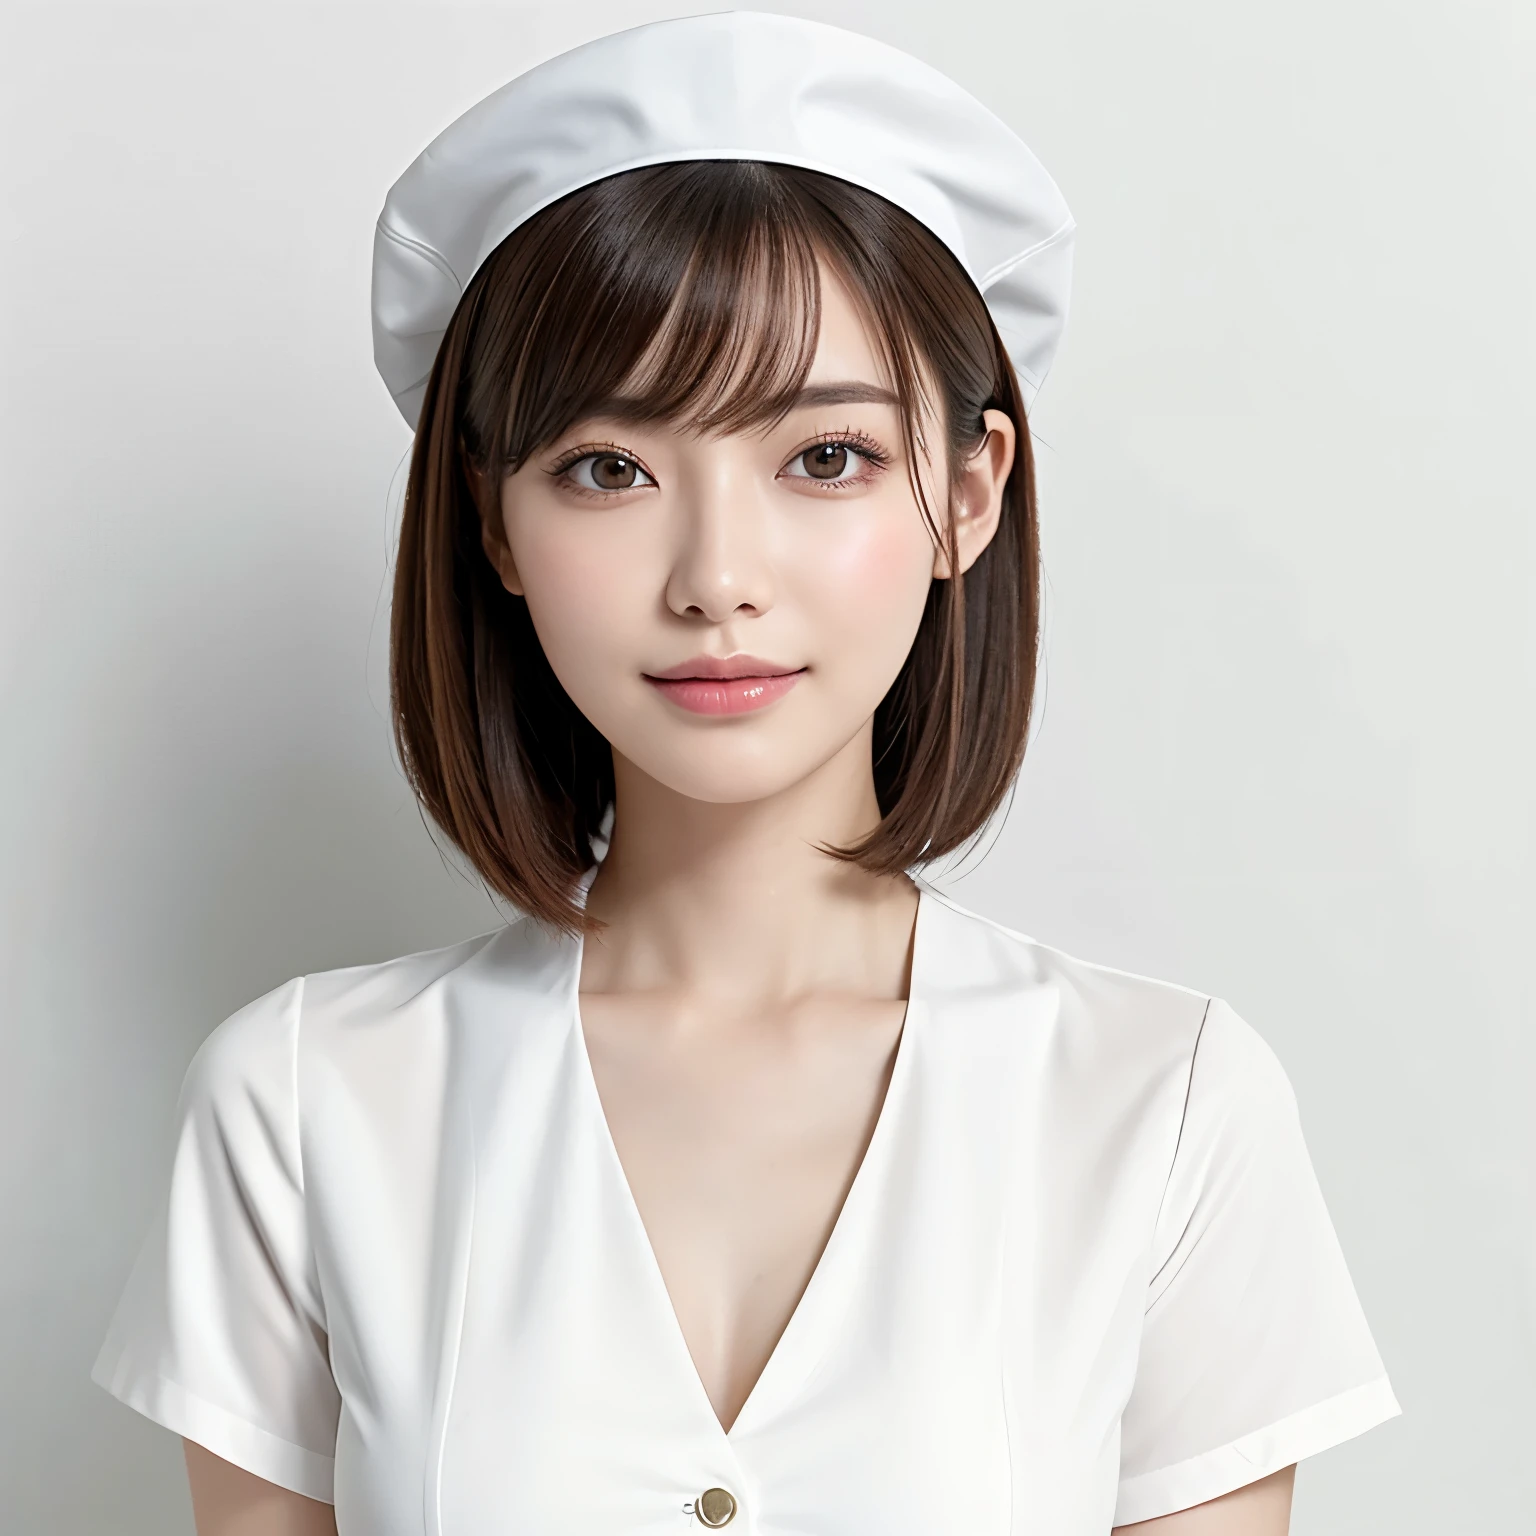 (最好的品質、桌上、8K、最佳影像品質、获奖作品)、1 美麗護士、(獨自的:1.1)、直短髮、完美的刘海、(完美、最自然的護士制服:1.2)、(完美最自然的純白護士帽:1.2)、(最自然的真實護士帽:1.2)、(最簡單的純白色背景:1.5)、(完美固定在正面:1.3)、非常大的乳房、強調身體線條、(具有足夠空白的女性的完美正面和水平肖像:1.3)、(完美地描繪了一個女人的橫向和正面:1.3)、美麗細緻的眼睛、看著我微笑、(胸部以上直立照片:1.3)、(請轉身直視我:1.3)、優雅的妝容、超高清美女臉、超高清頭髮、超高清閃閃發光的眼睛、超高解析度光澤唇部、准确的解剖学、非常漂亮的皮膚、超高清發光美肌、從正面看優美的直立姿勢、(非常明亮:1.3)